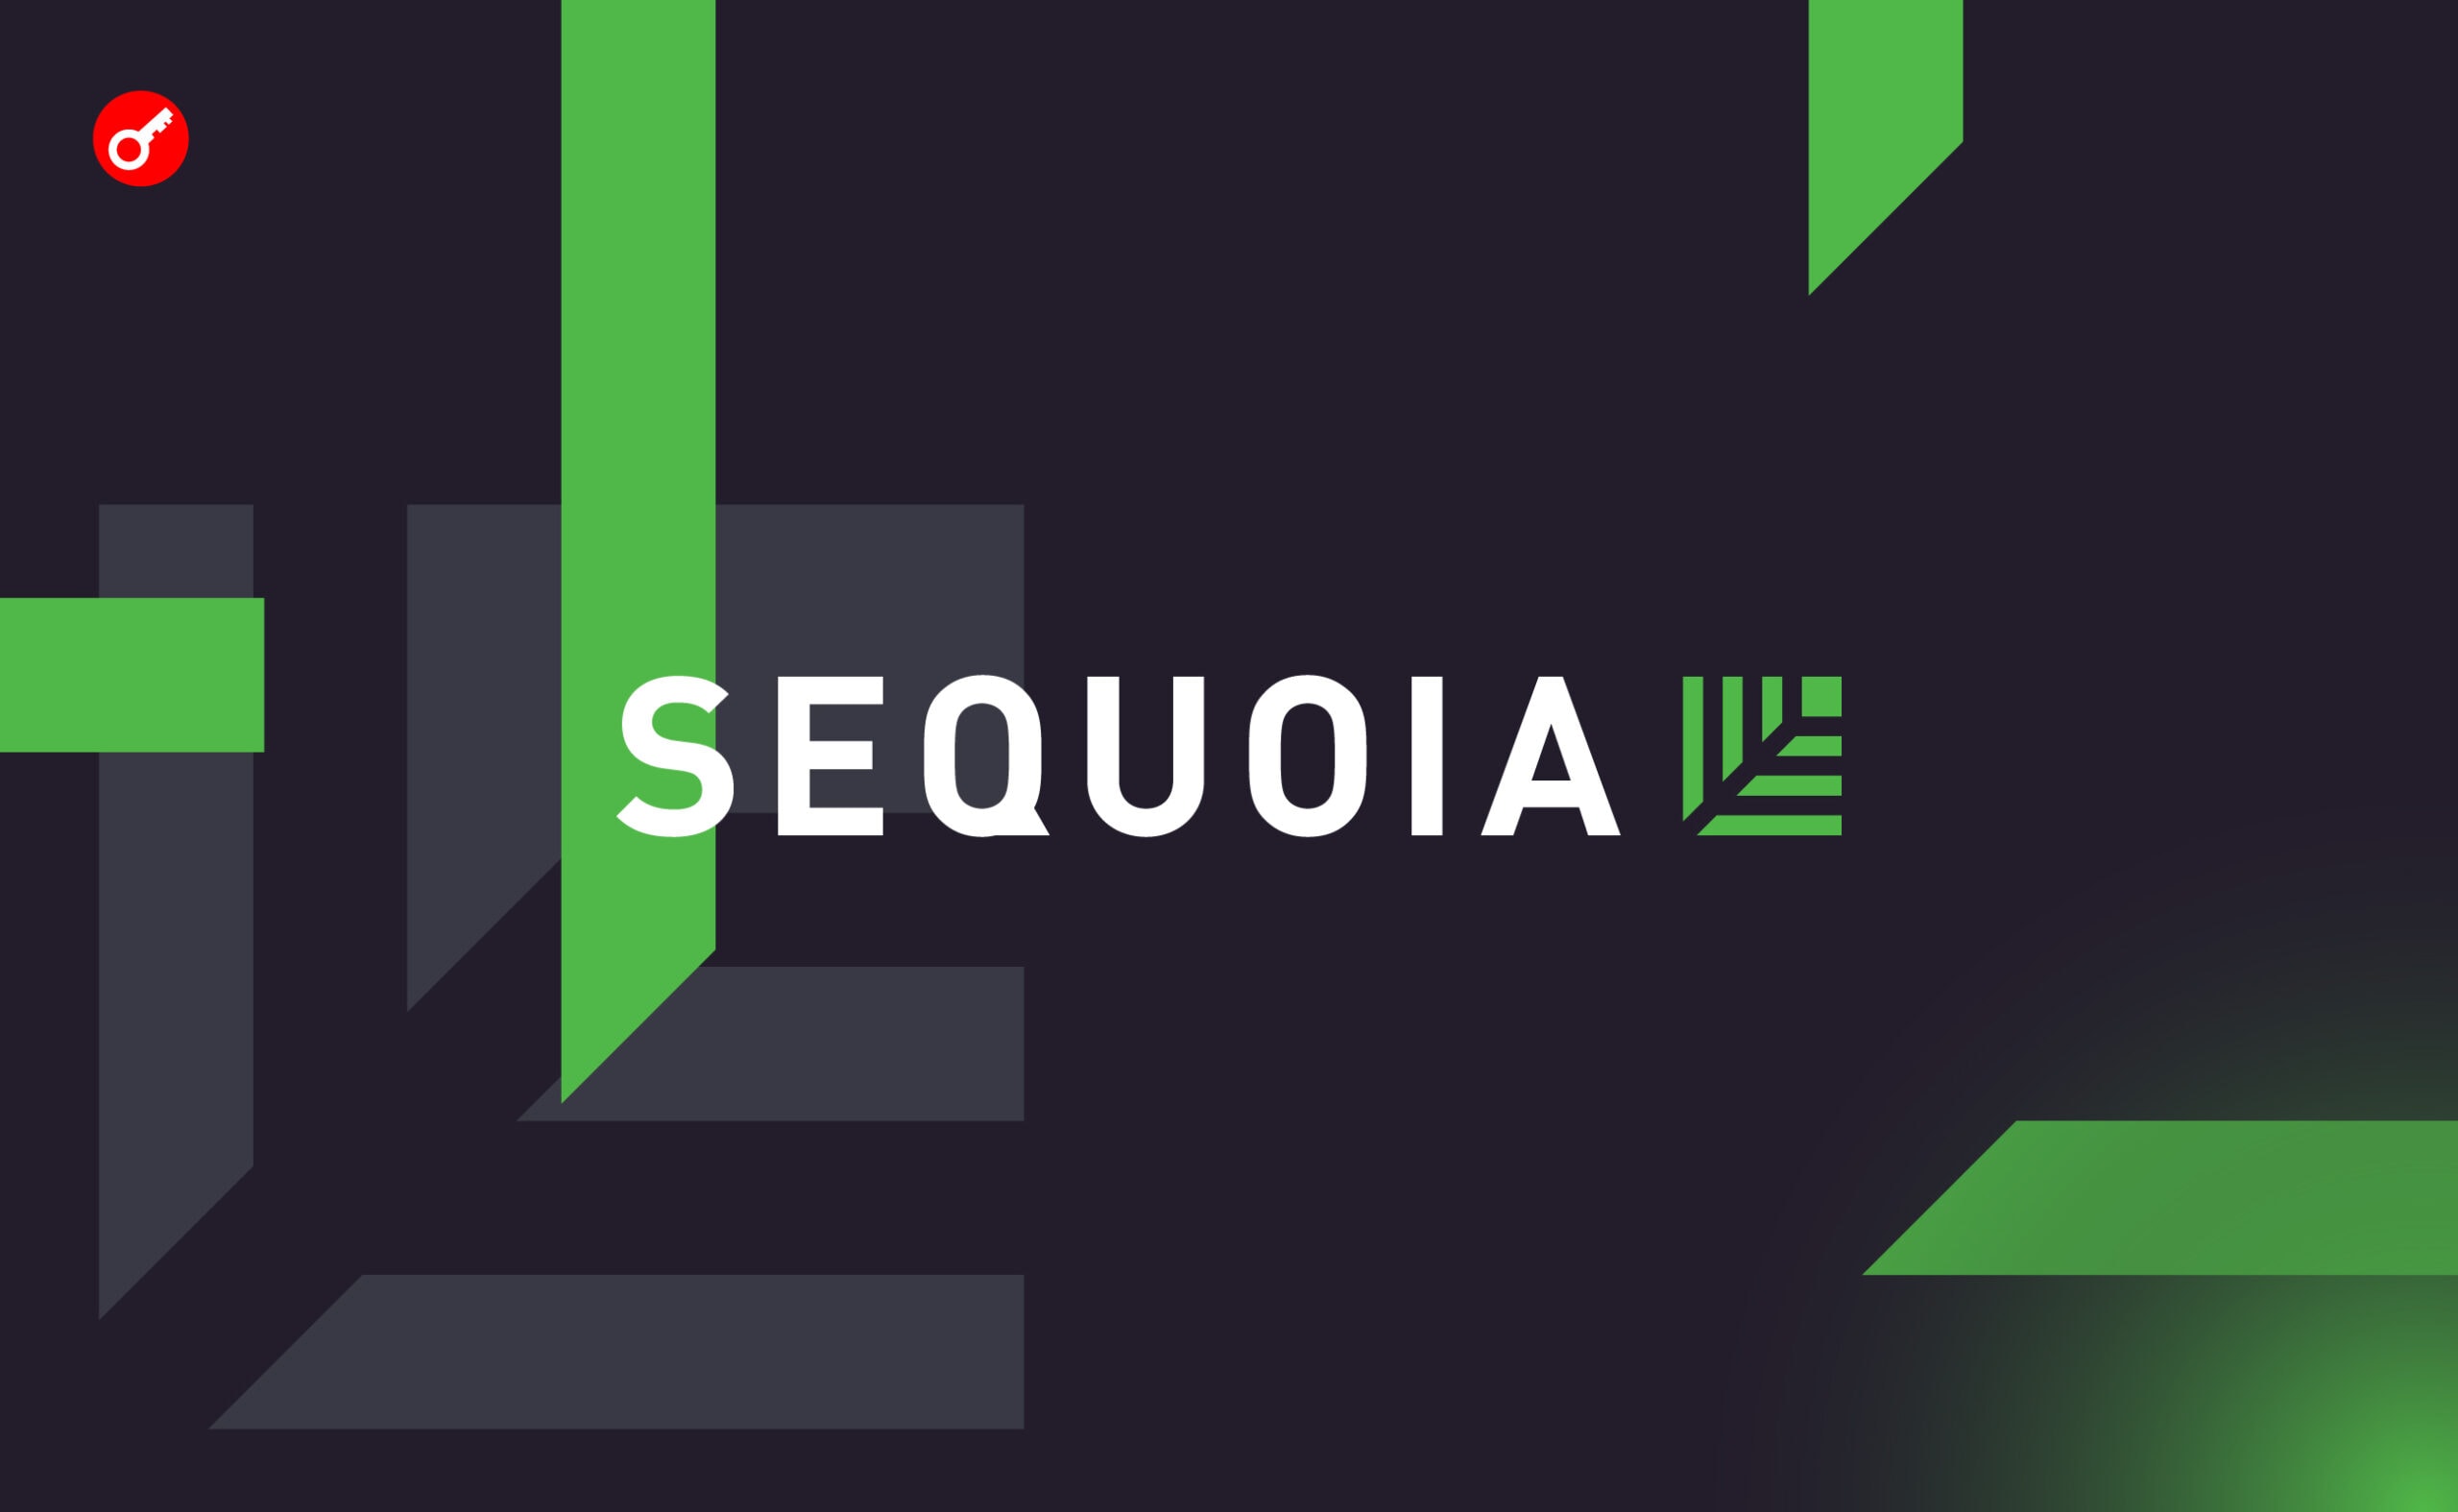 Sequoia Capital скоротить свій криптофонд на 66%. Головний колаж новини.